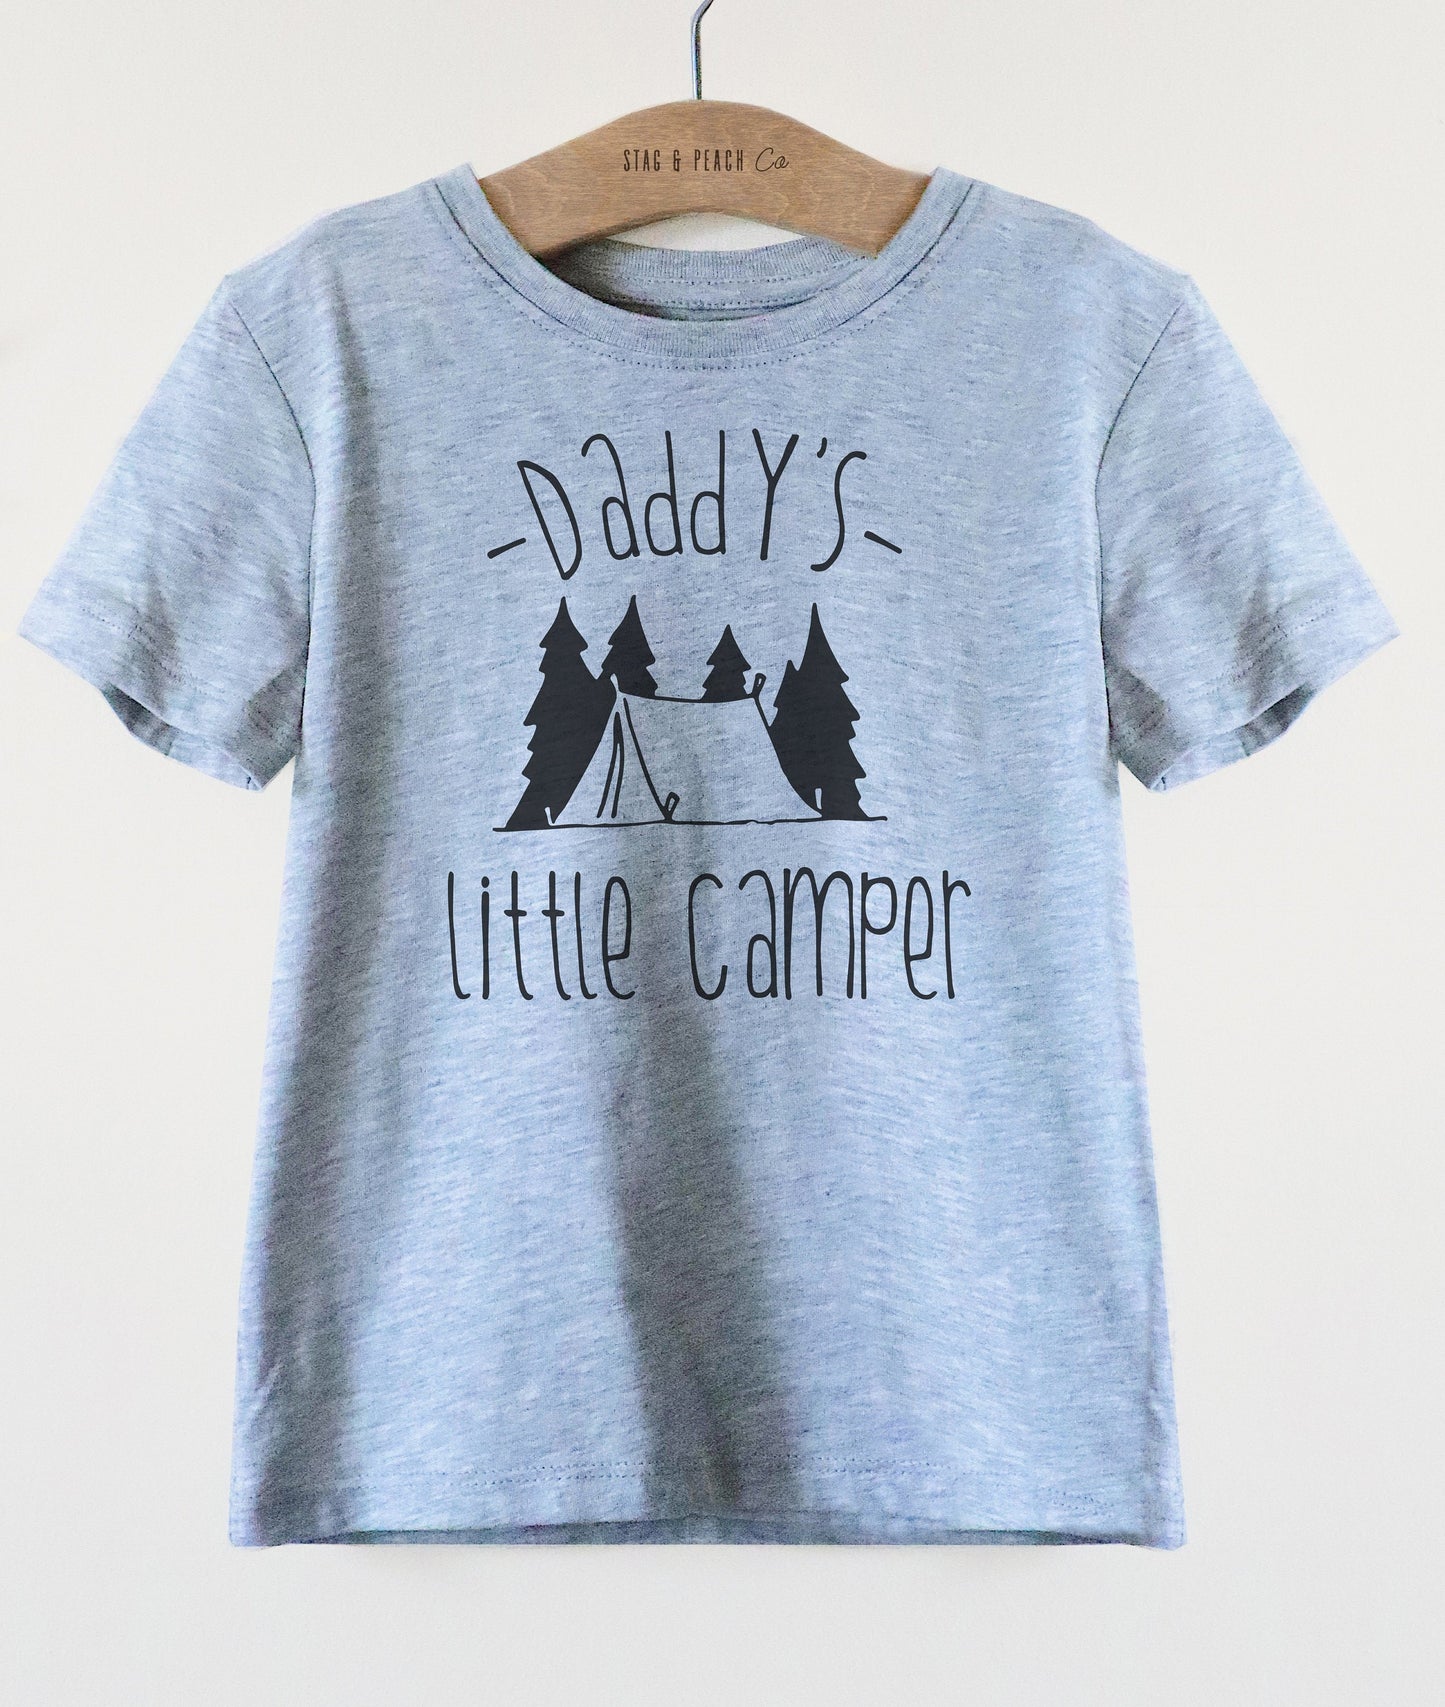 Daddy's Little Camper Kids Shirt - Camping Shirt, Happy Camper, Kids Camping Shirt, Adventure Shirt, Camping Toddler Shirt, Camp Shirt